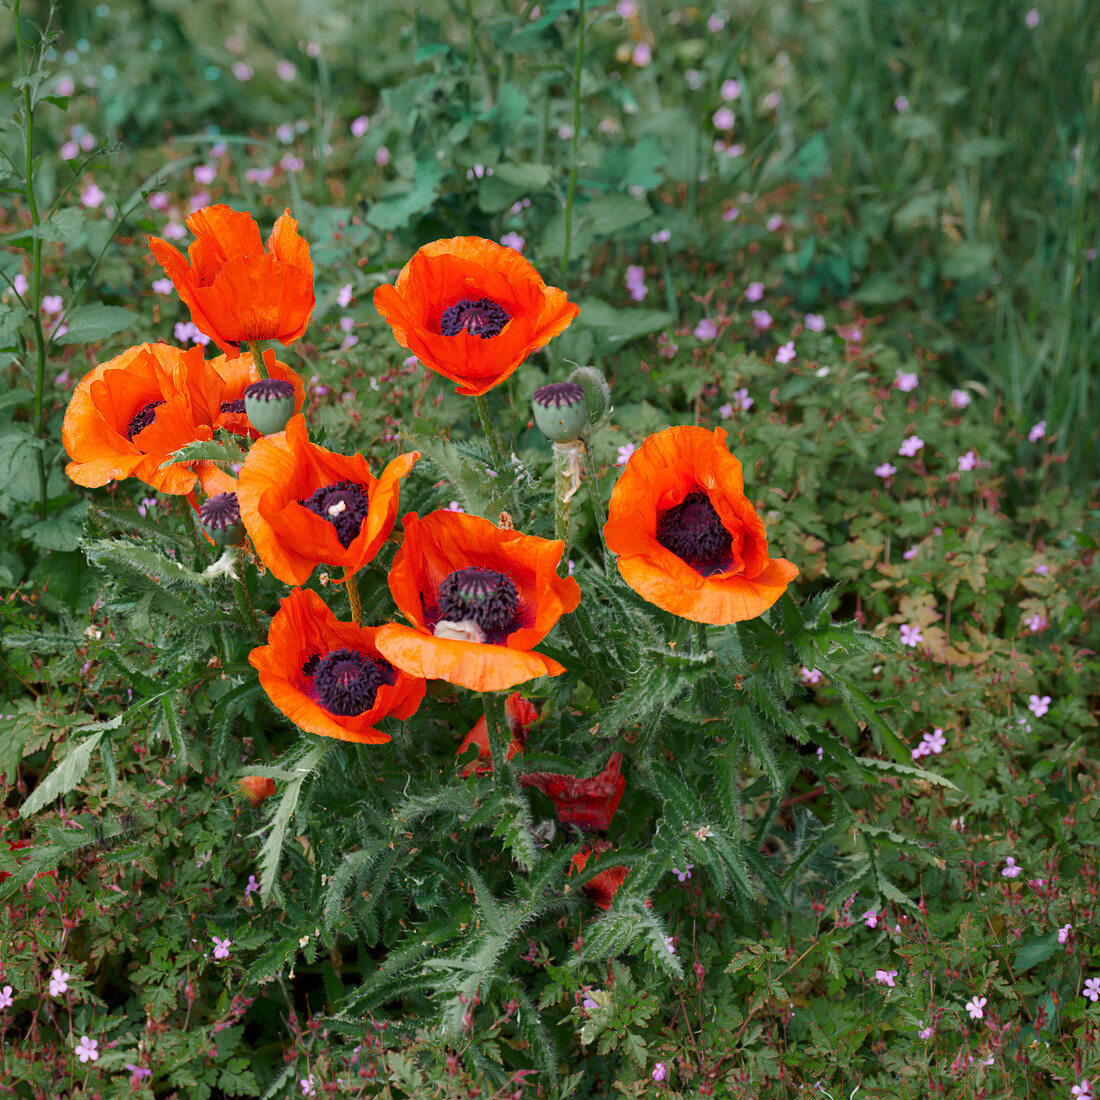 Poppy flowers in the field, Lower Saxony, Germany